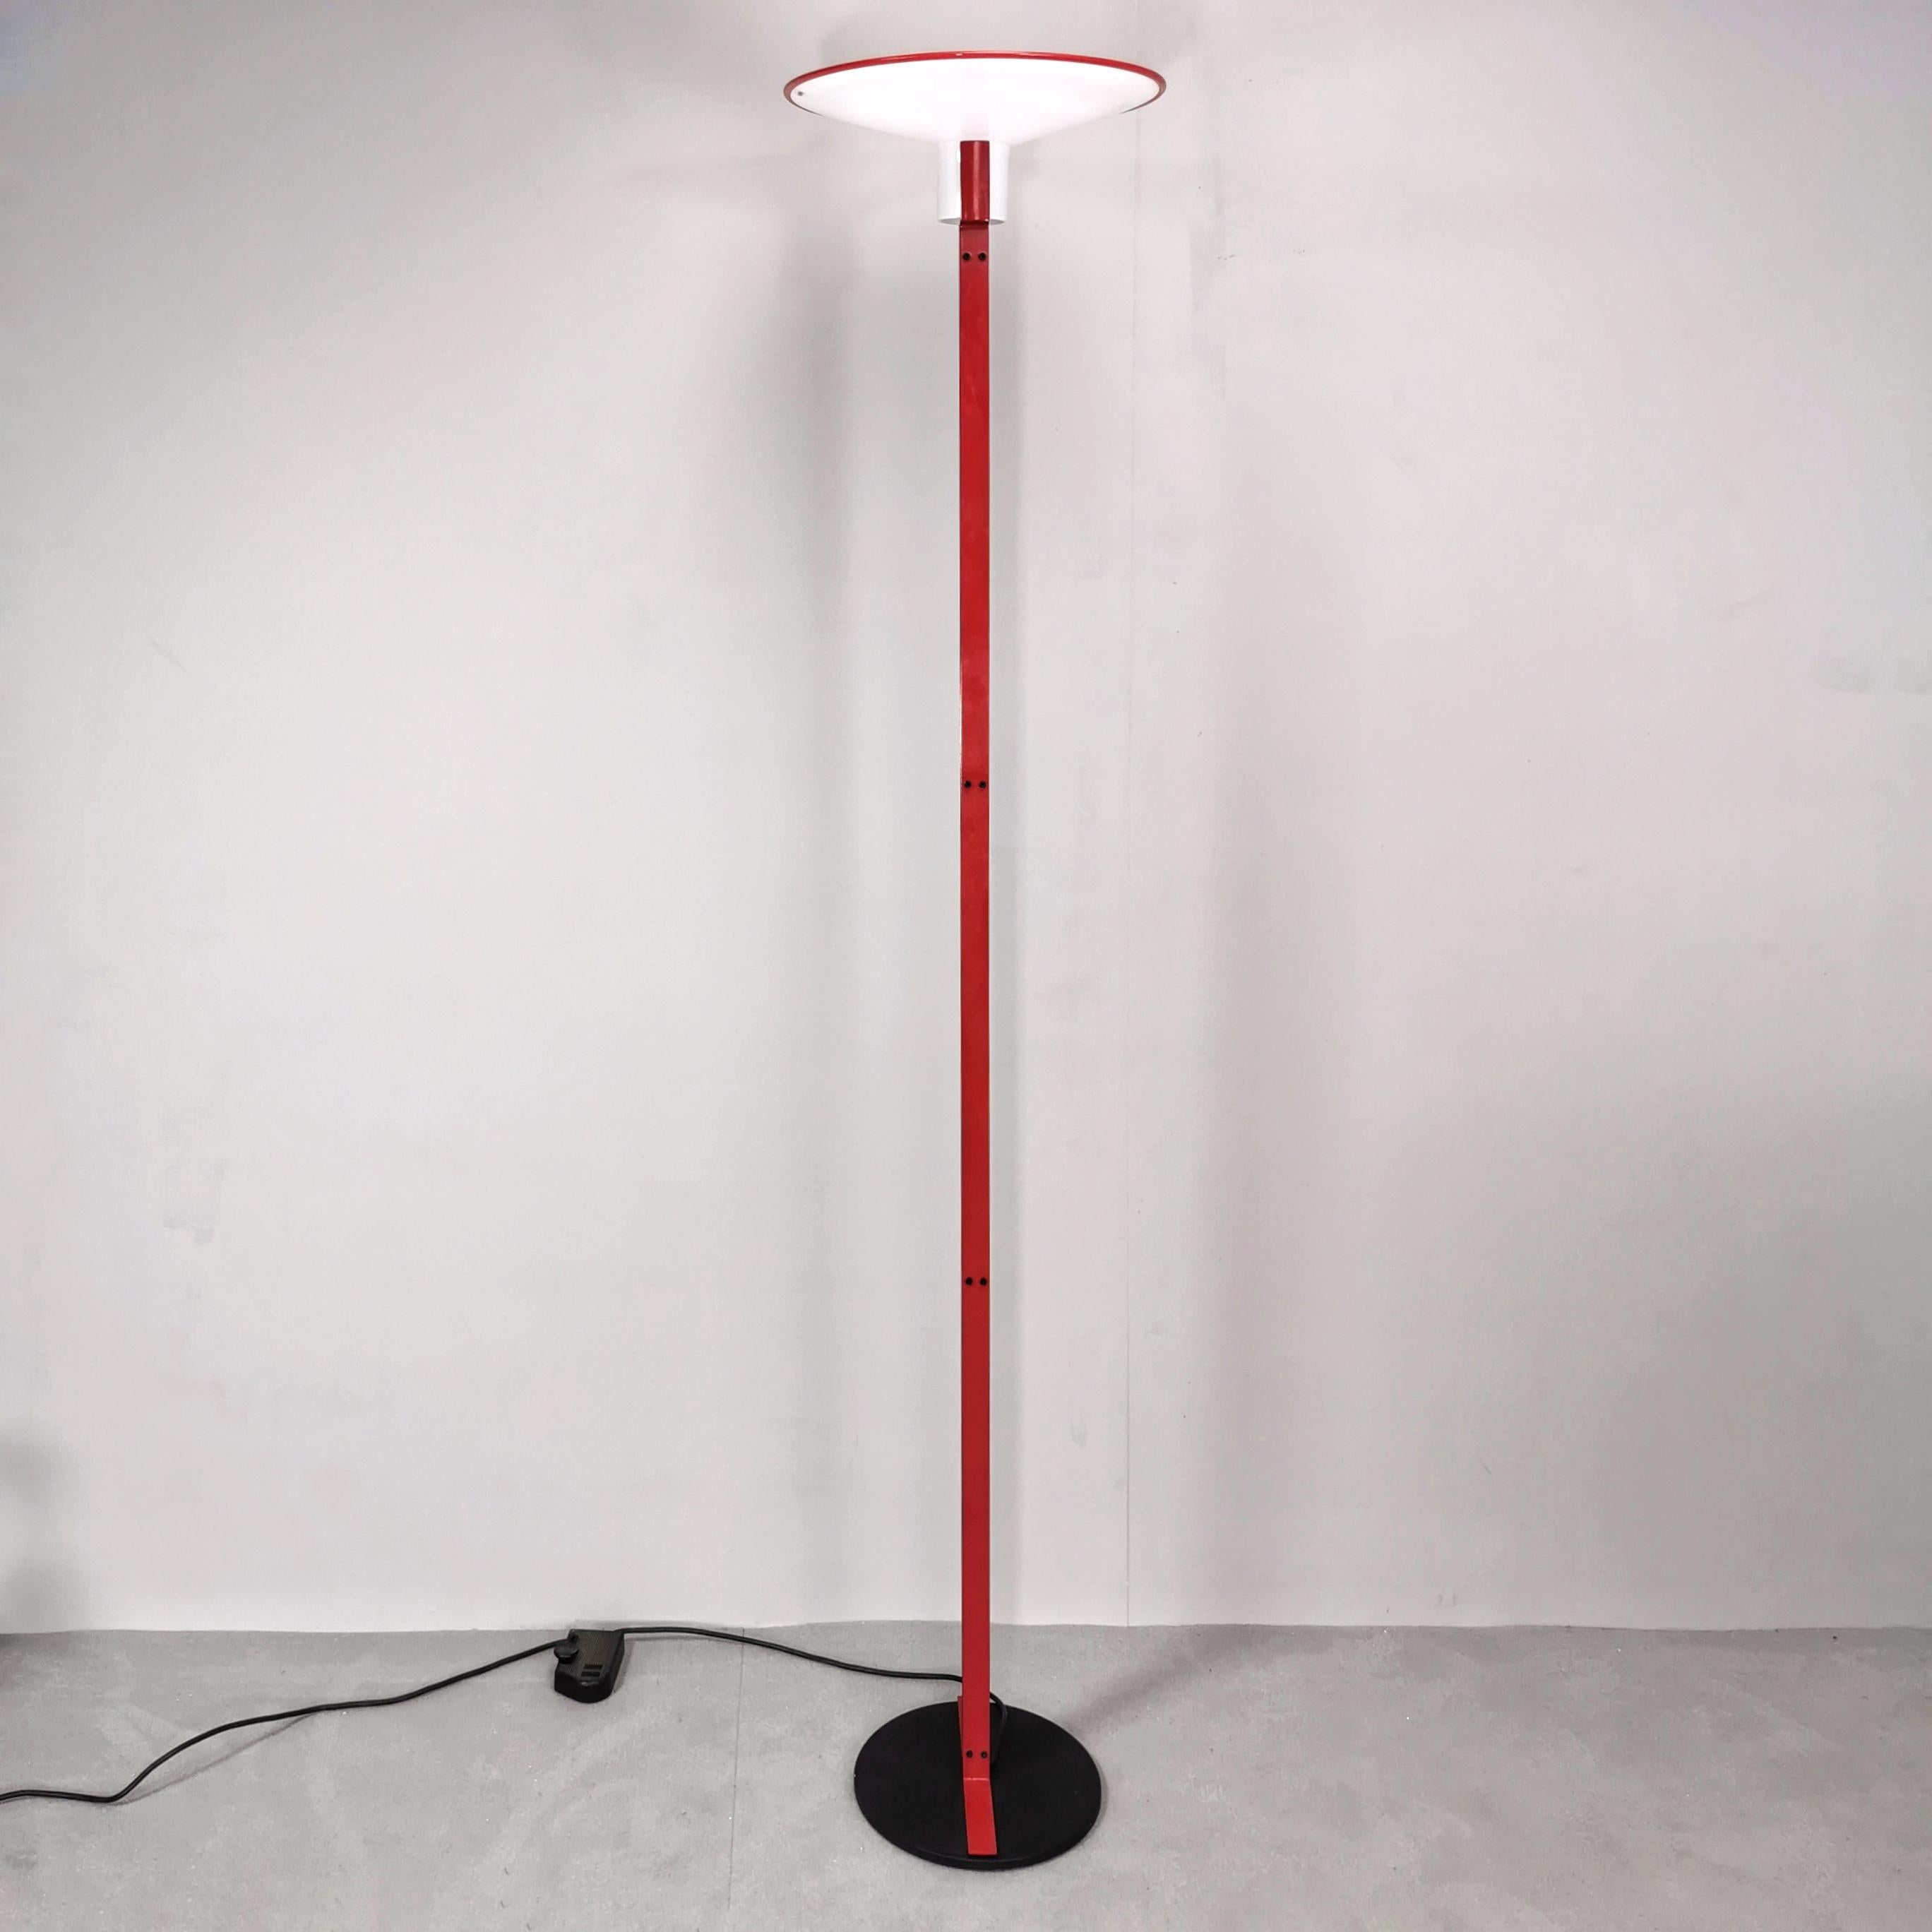 Lampe Venini art (Veart) conçue et produite au début des années 1980. Cet élégant et très rare lampadaire du fabricant italien VeArt présente d'adorables détails. D'une base ronde partent deux tiges plates d'un beau rouge qui tiennent le câble au